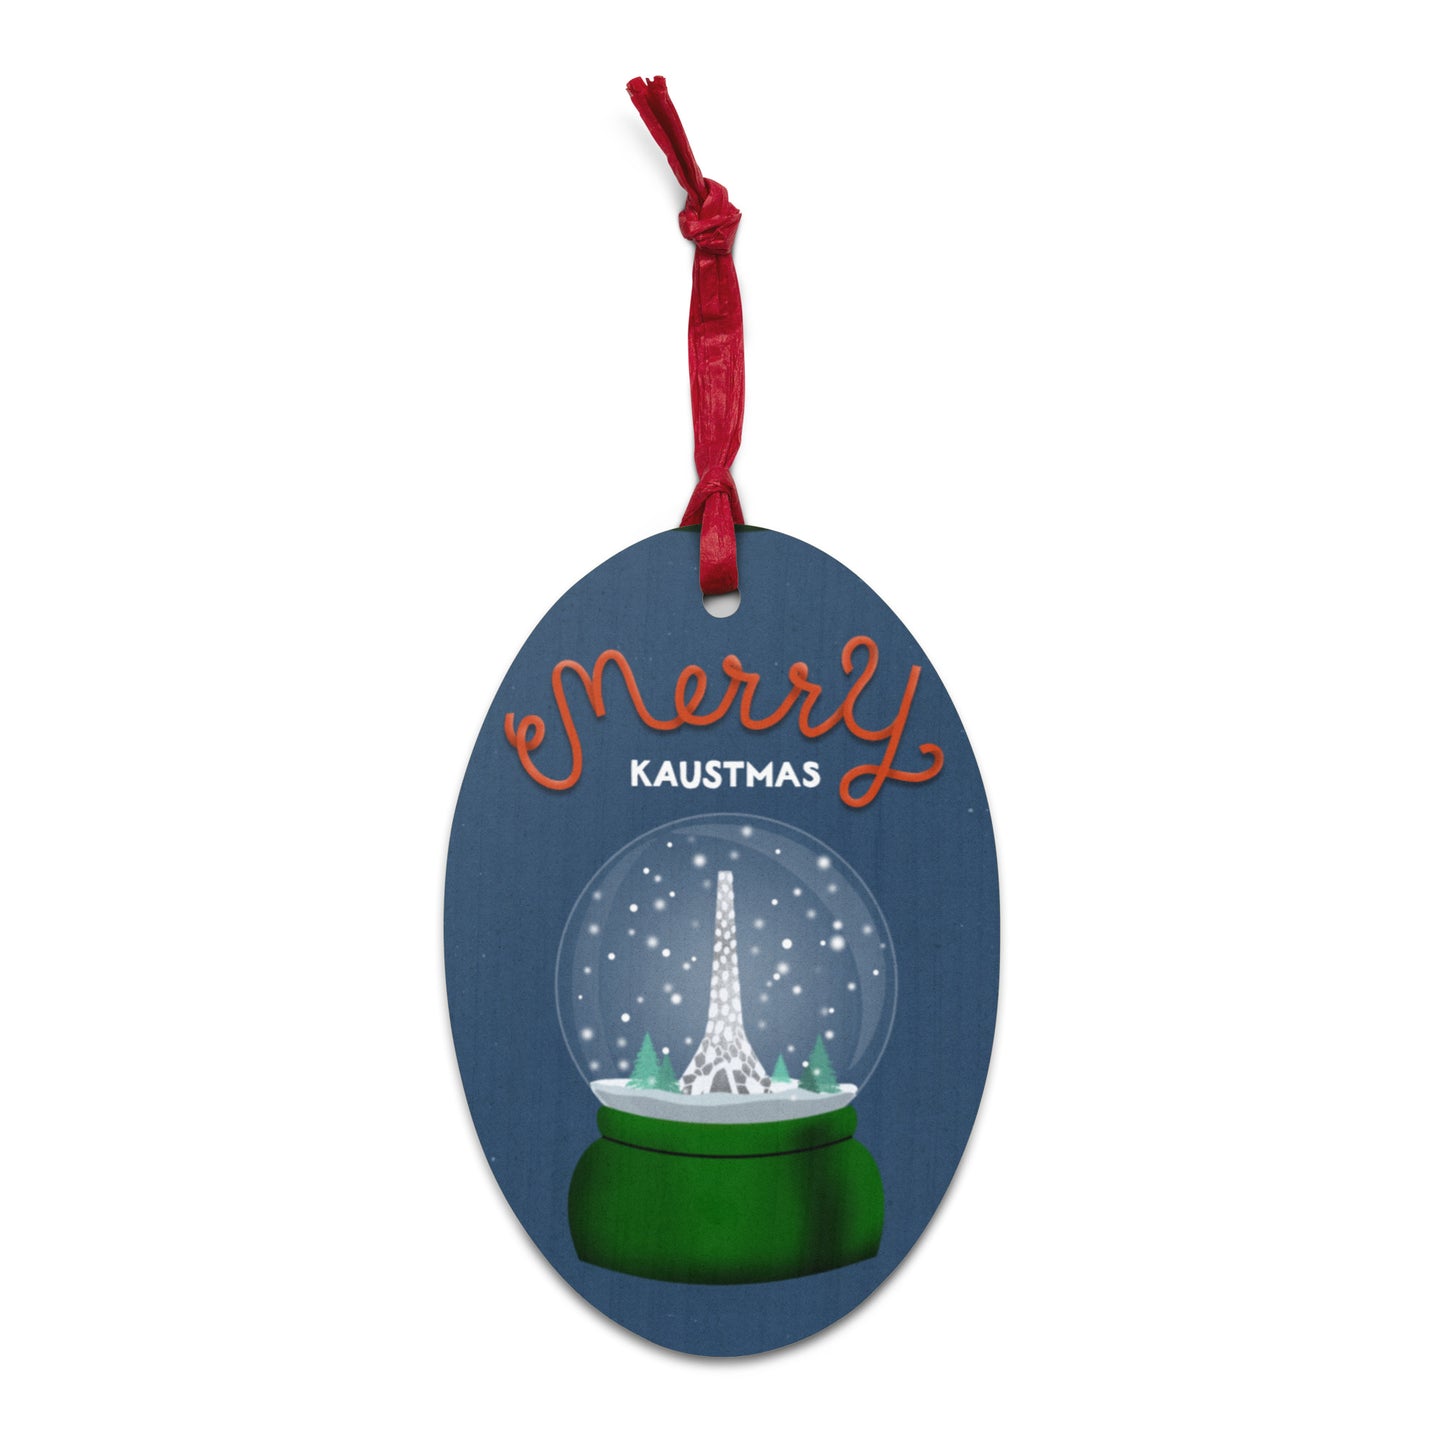 Wooden Holiday Ornaments - Merry KAUSTmas Beacon Snow Globe